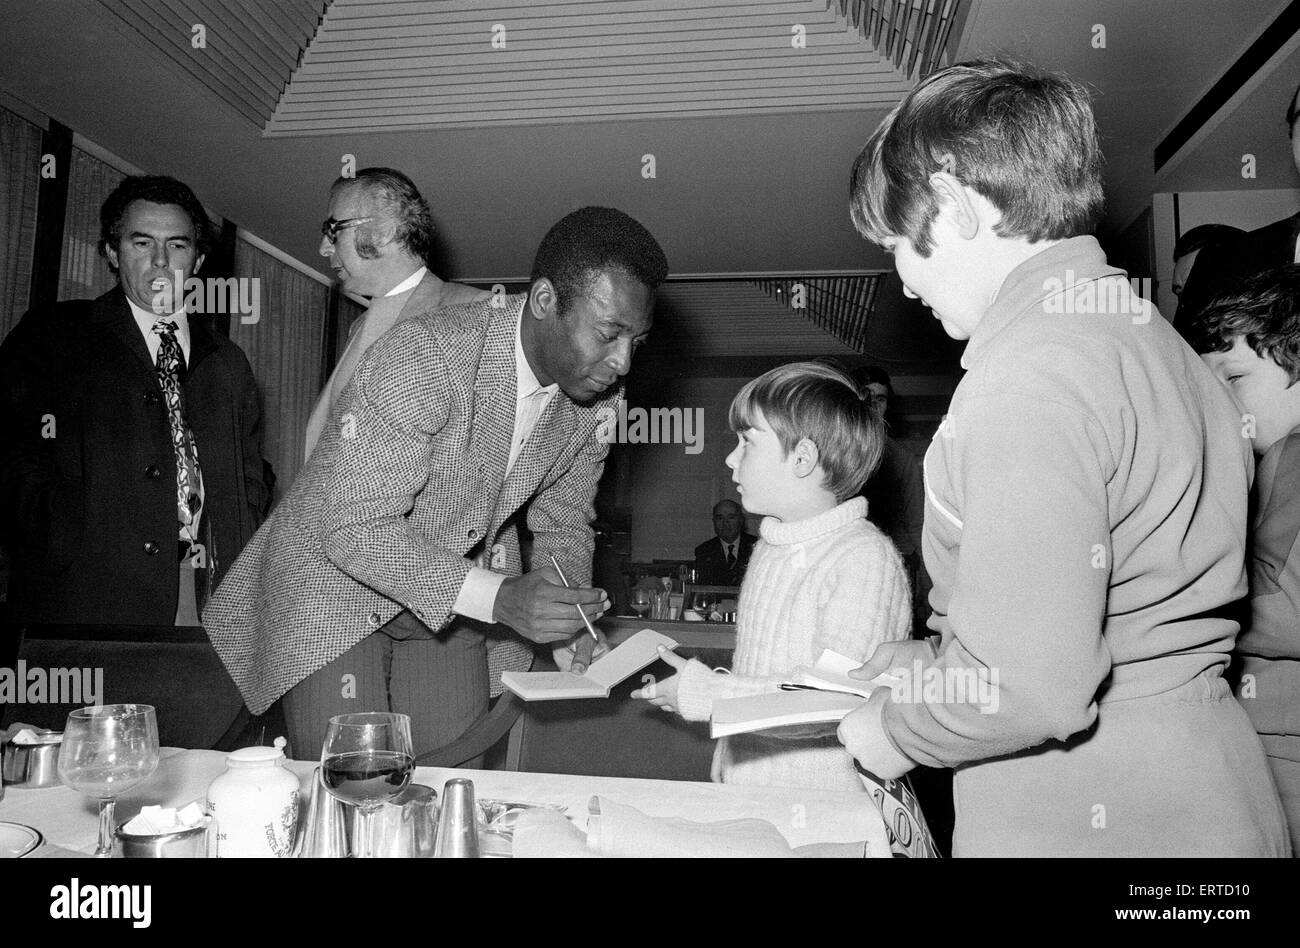 Footballeur brésilien, Edson Arantes do Nascimento, plus connu sous le nom de Pelé, illustré de signer des autographes lors de sa visite à Birmingham. Février 1972 Banque D'Images